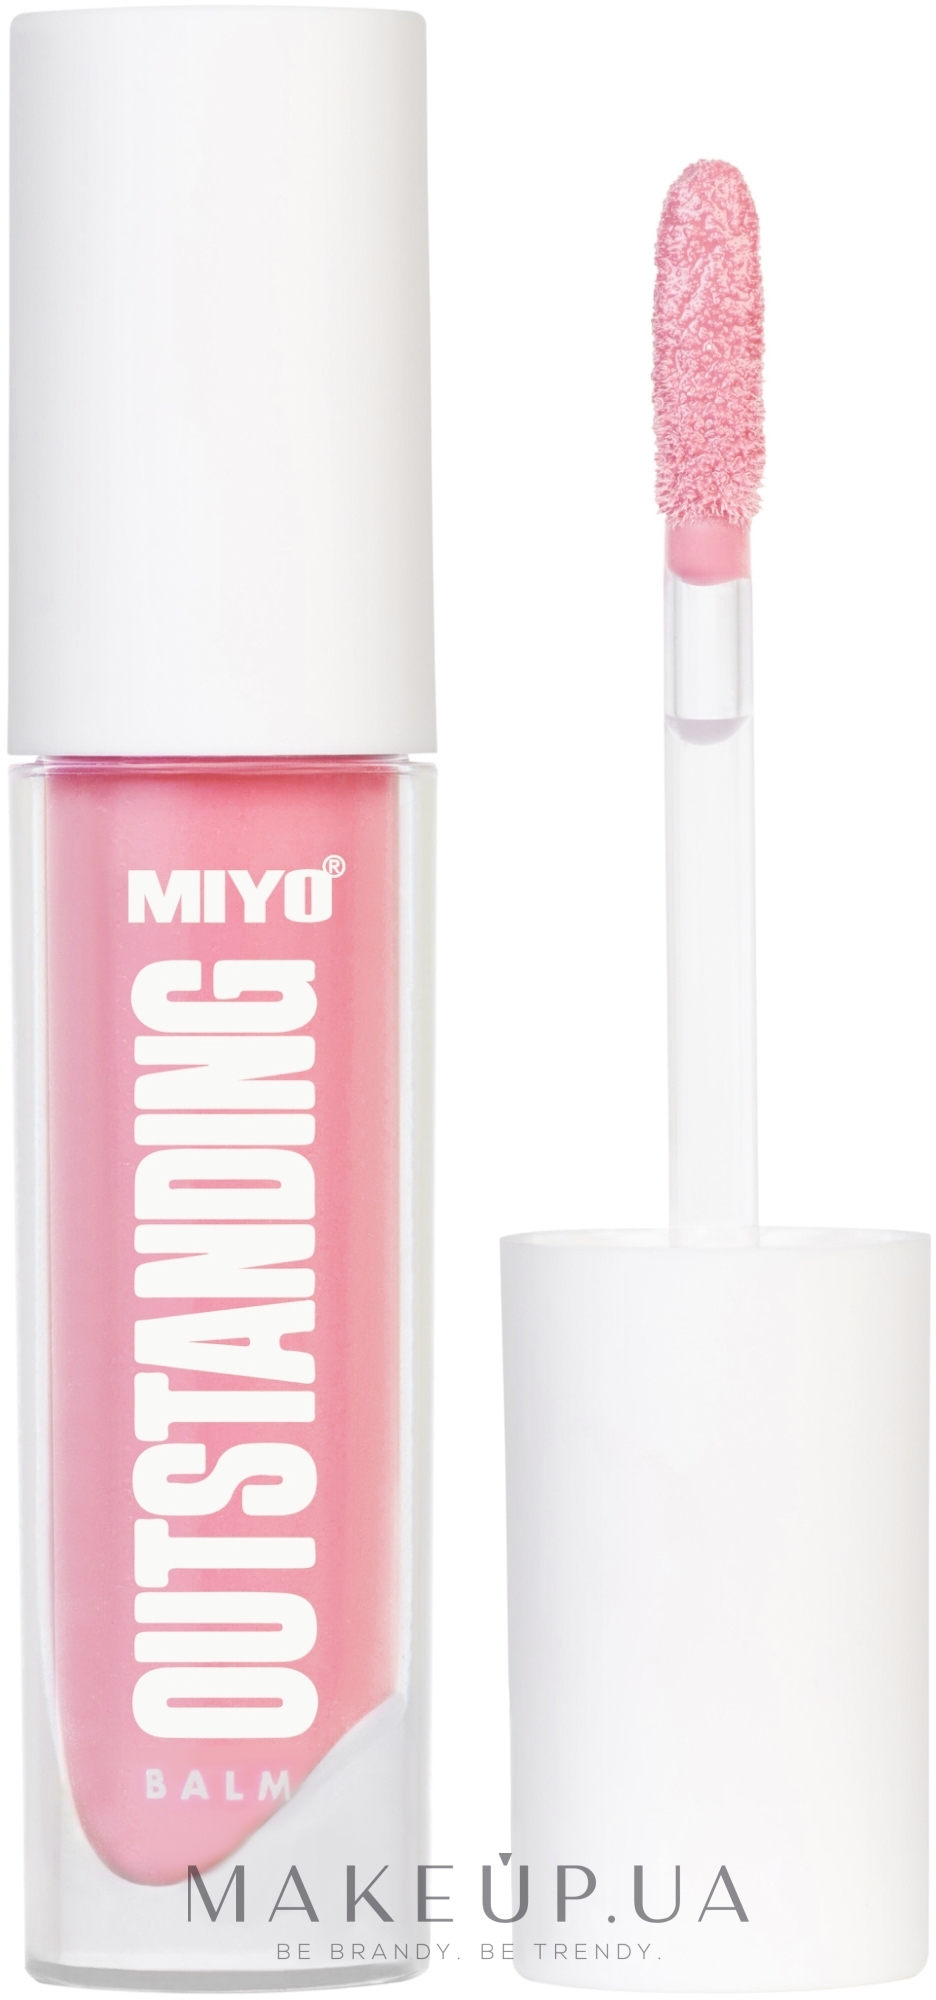 Блеск для губ с охлаждающим эффектом - Miyo Outstanding Cool Lip Gloss  — фото 33 - Via Lattea